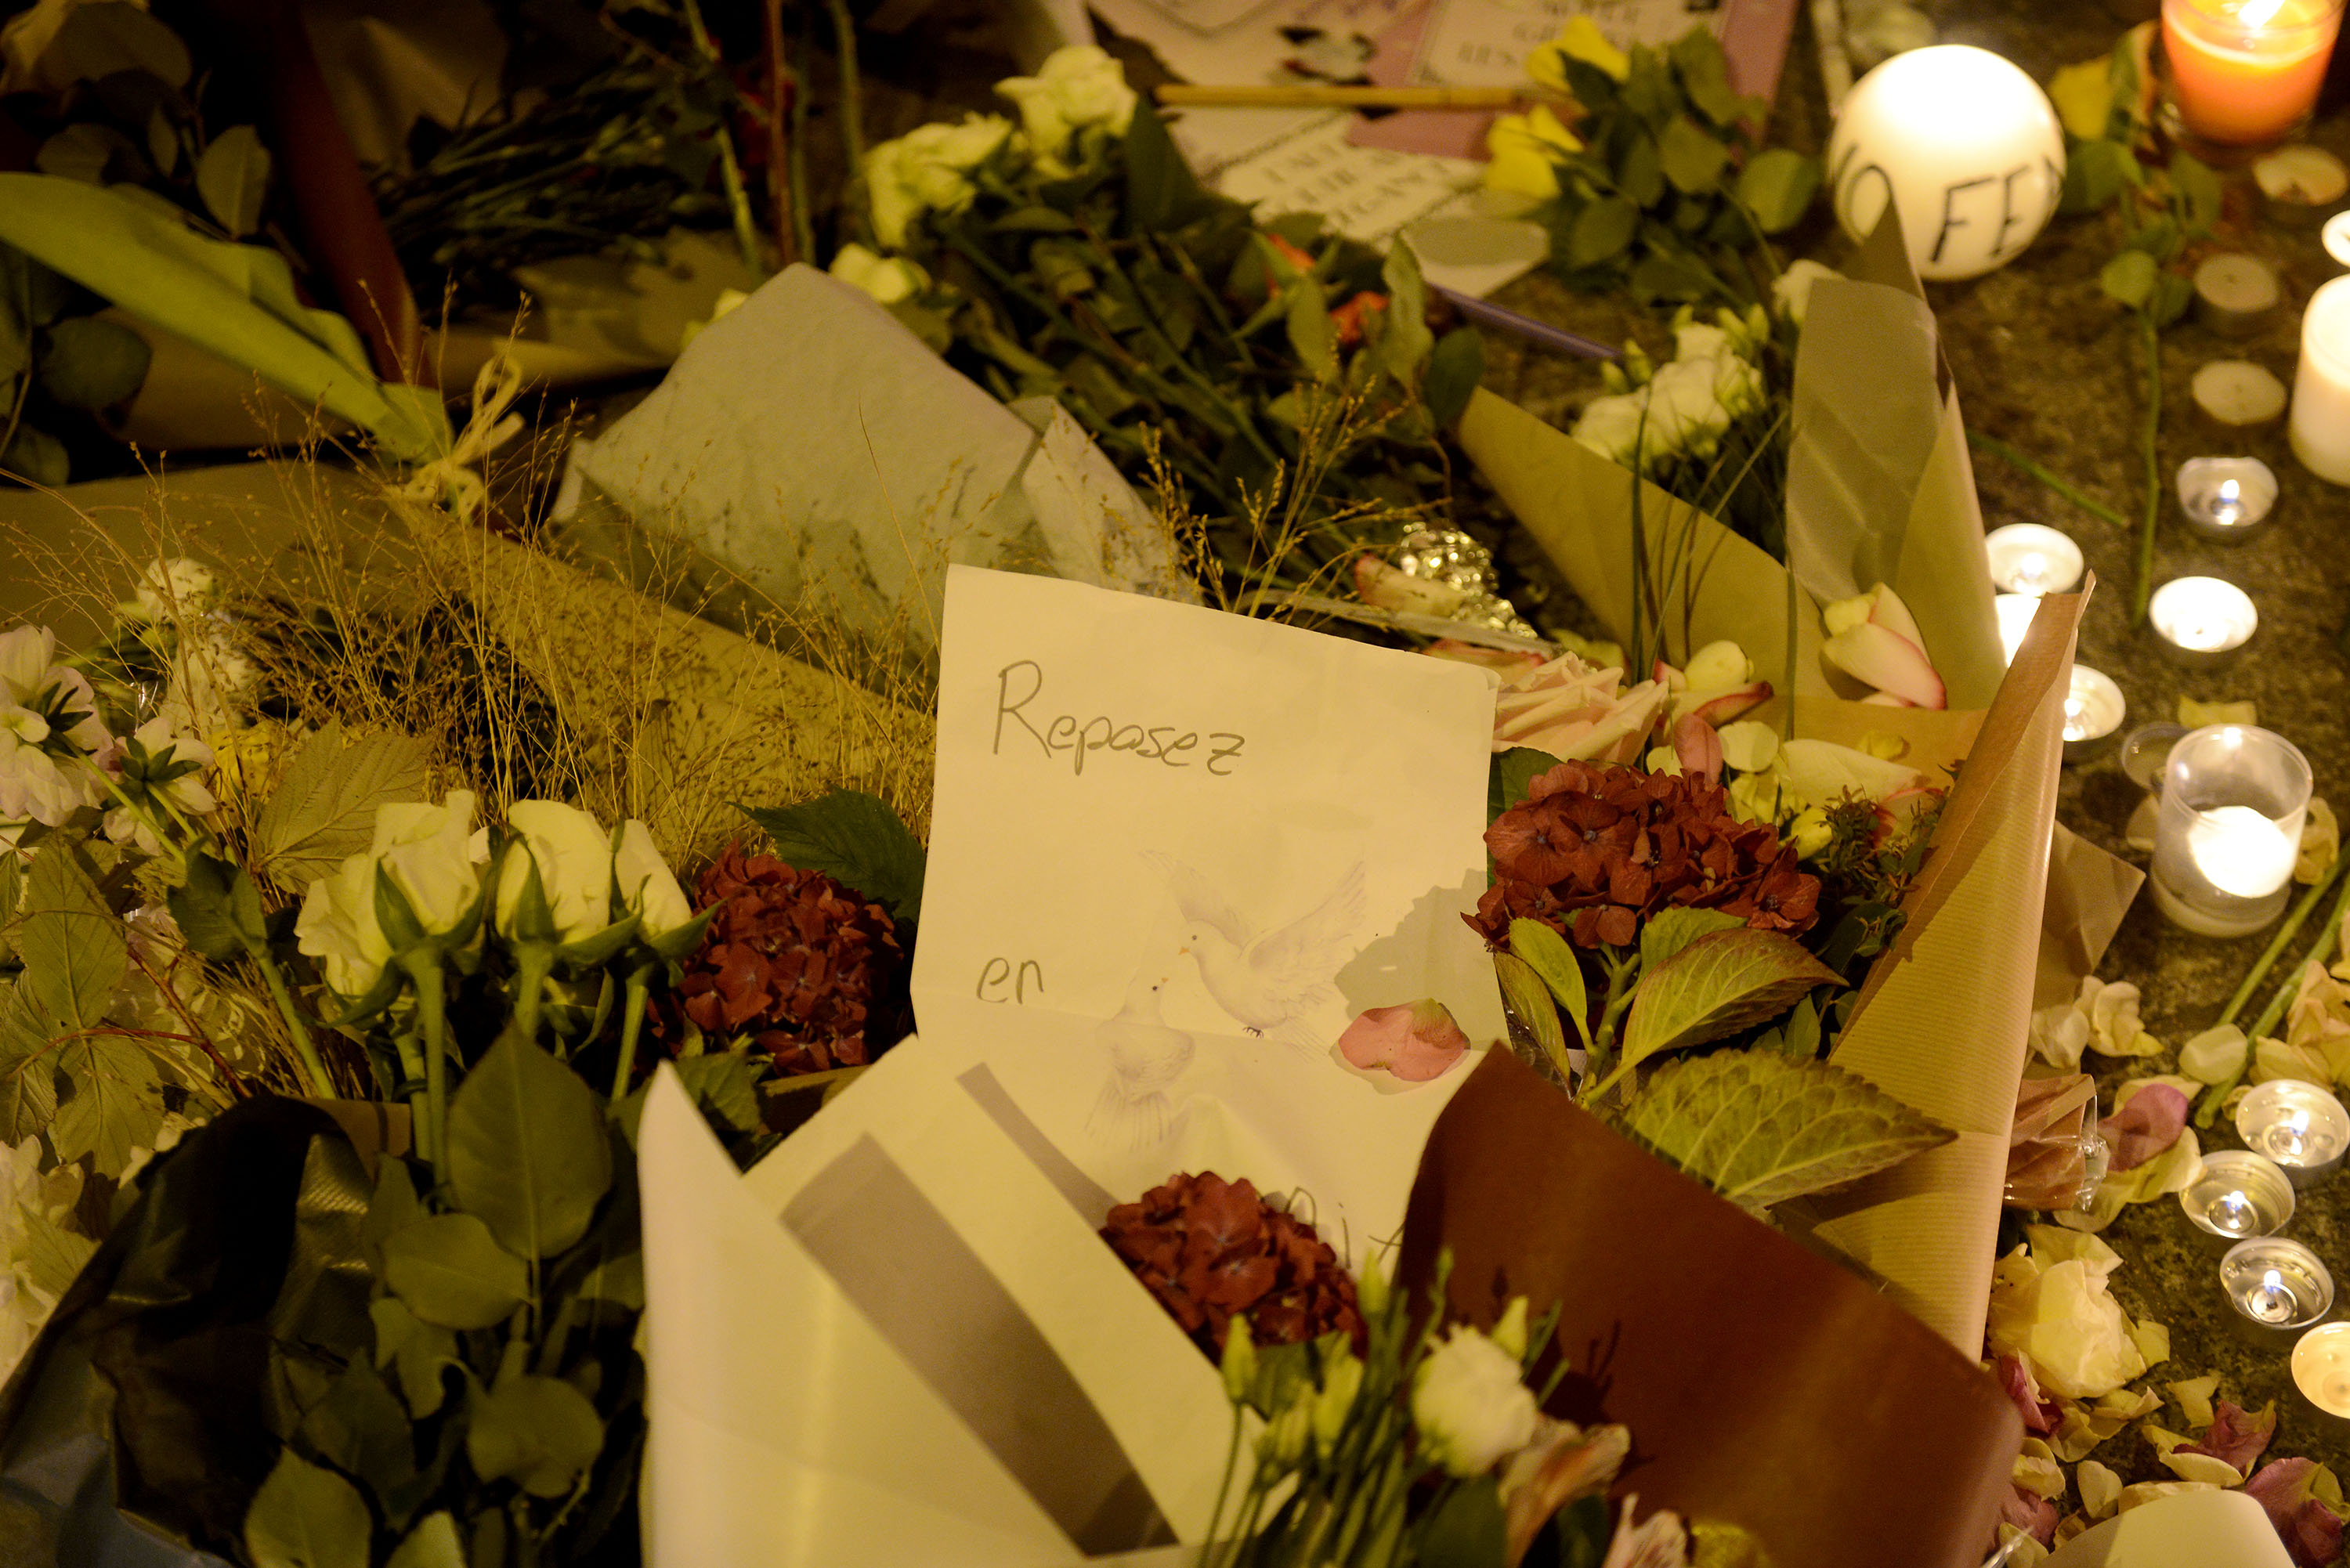 Athen: Einer der Pariser Terroristen war Anfang Oktober als Flüchtling registriert